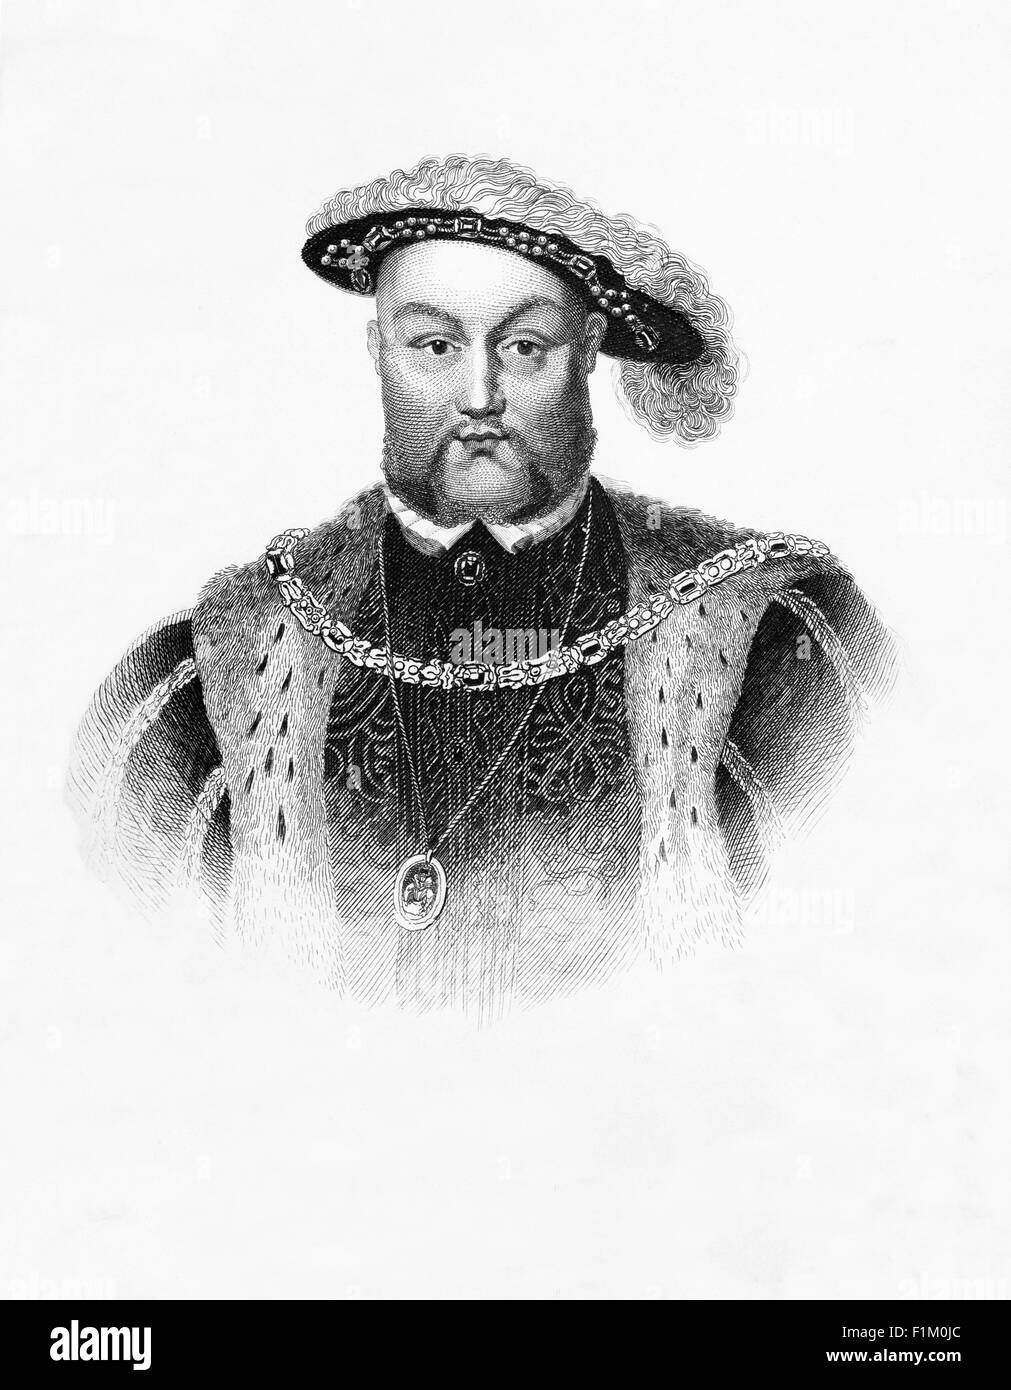 Le Roi Henry VIII 1491 - 1547 qui s'est séparé de l'Église catholique et s'est proclamé chef de l'Église d'Angleterre. Aussi célèbre pour ses six épouses. Banque D'Images